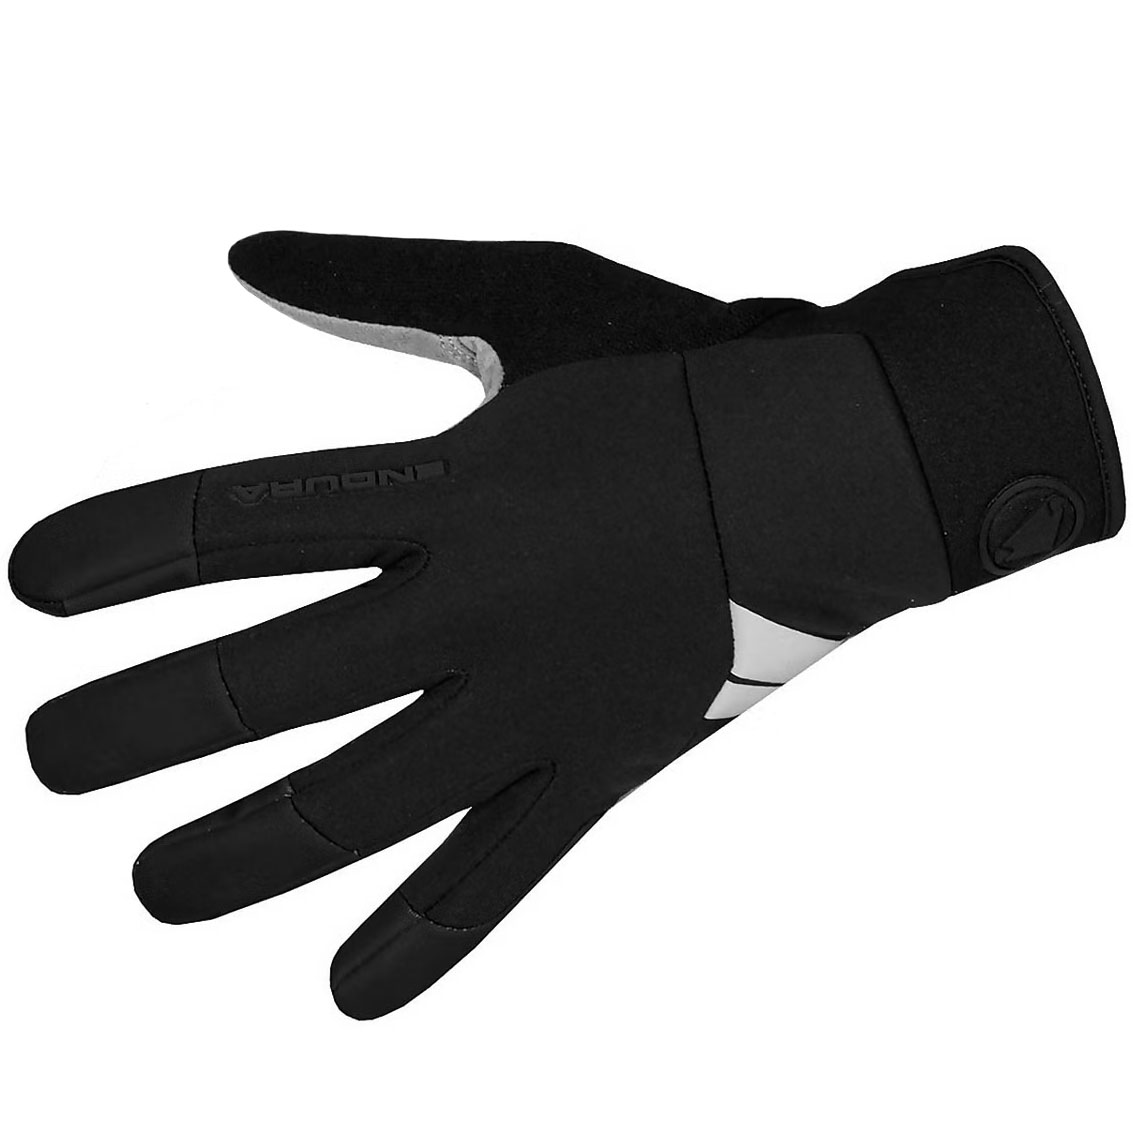 Produktbild von Endura Windchill Handschuhe - schwarz